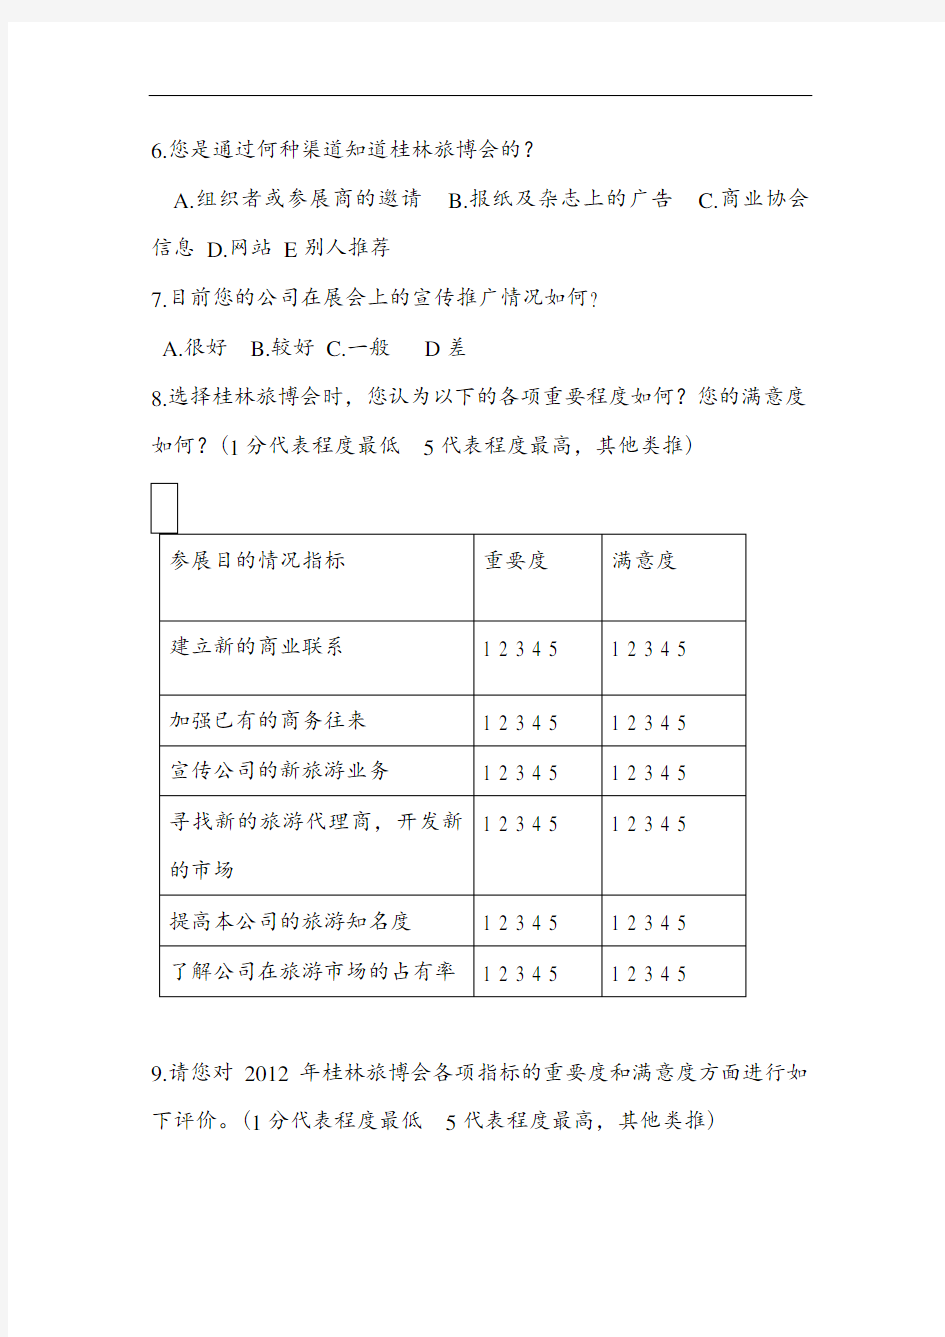 2012年桂林国际旅游博览会参展商满意度调查问卷